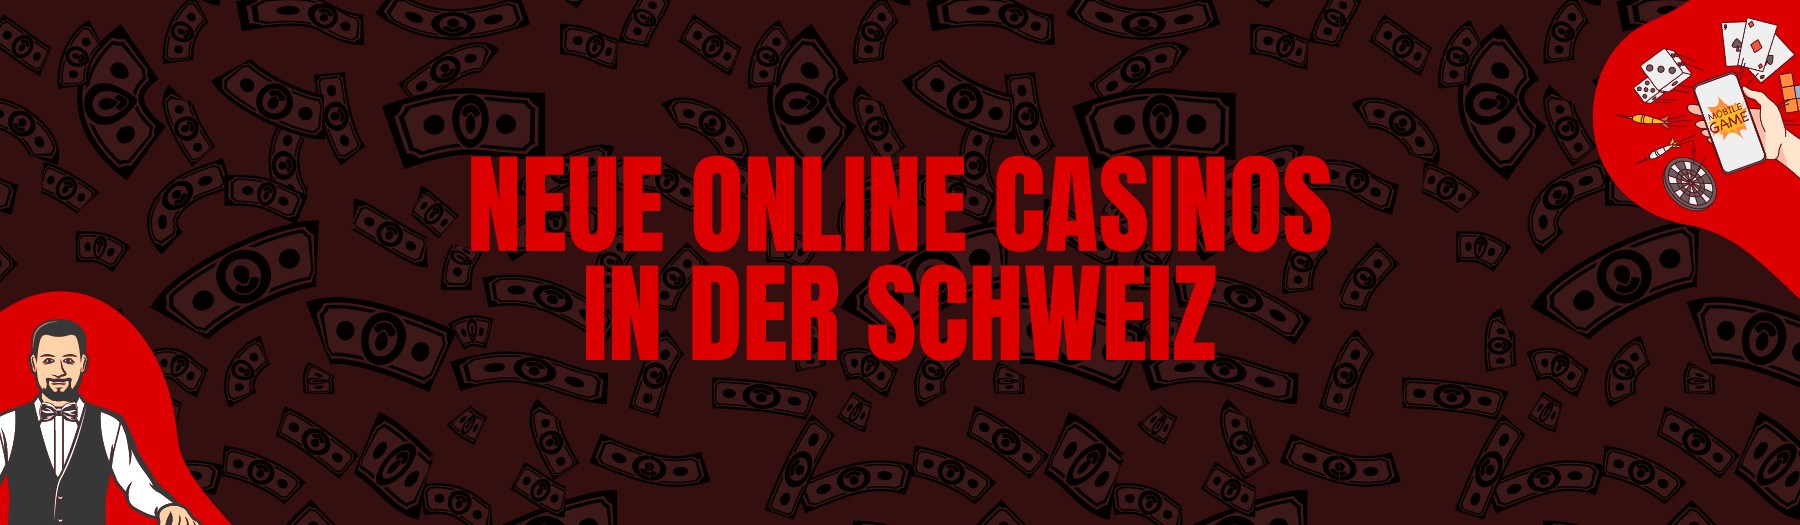 Neue Online Casinos in der Schweiz